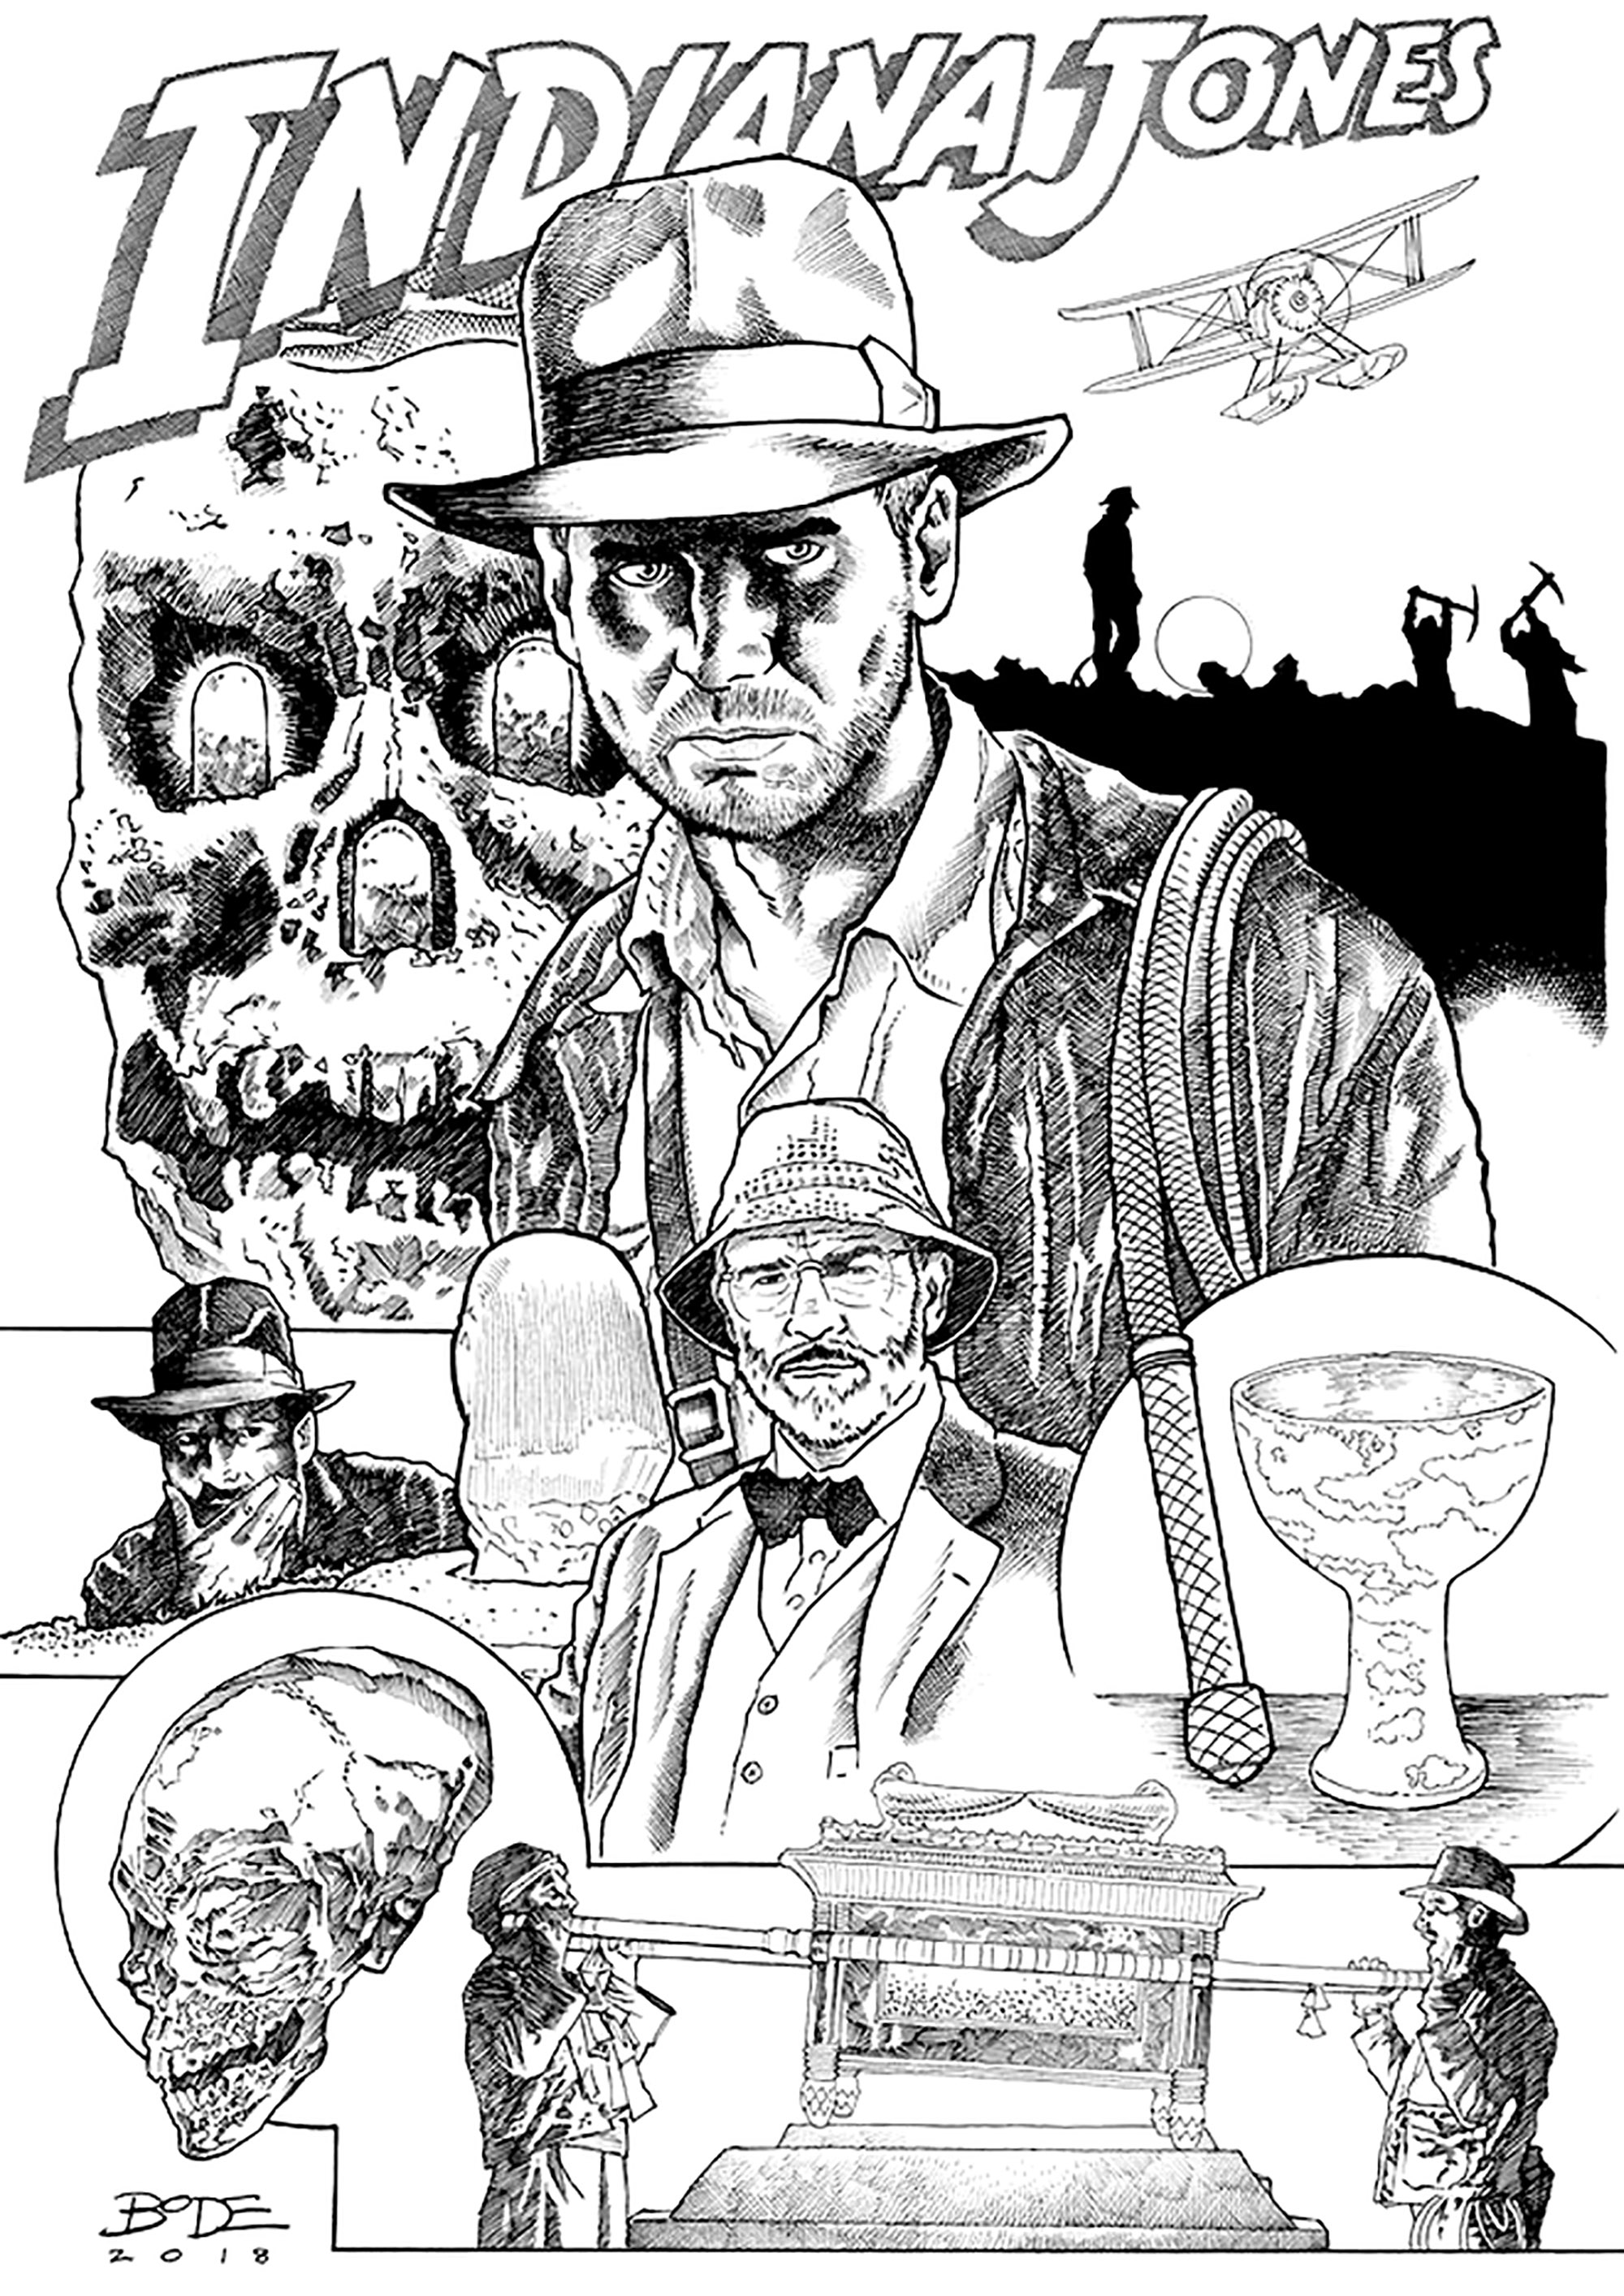 Zeichnung inspiriert von den Abenteuern von Indiana Jones. Male diese großartige Zeichnung aus, die von den verschiedenen Indiana Jones-Filmen inspiriert ist.Erstellt von Ryan Bodenheim, Comiczeichner, Künstler : Ryan Bodenheim